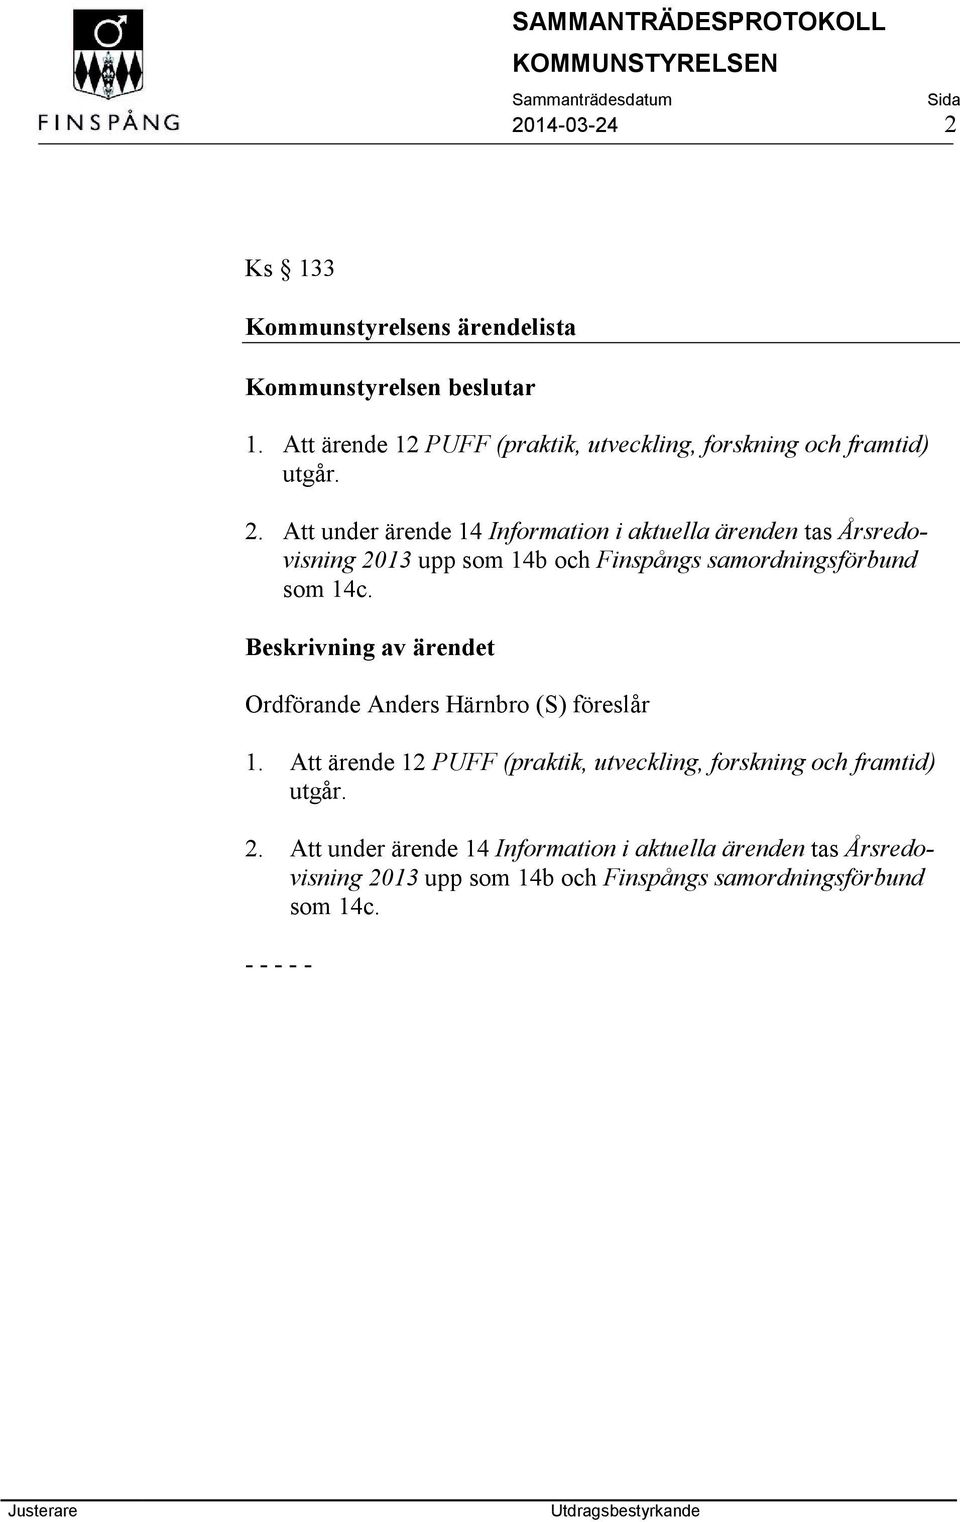 Att under ärende 14 Information i aktuella ärenden tas Årsredovisning 2013 upp som 14b och Finspångs samordningsförbund som 14c.